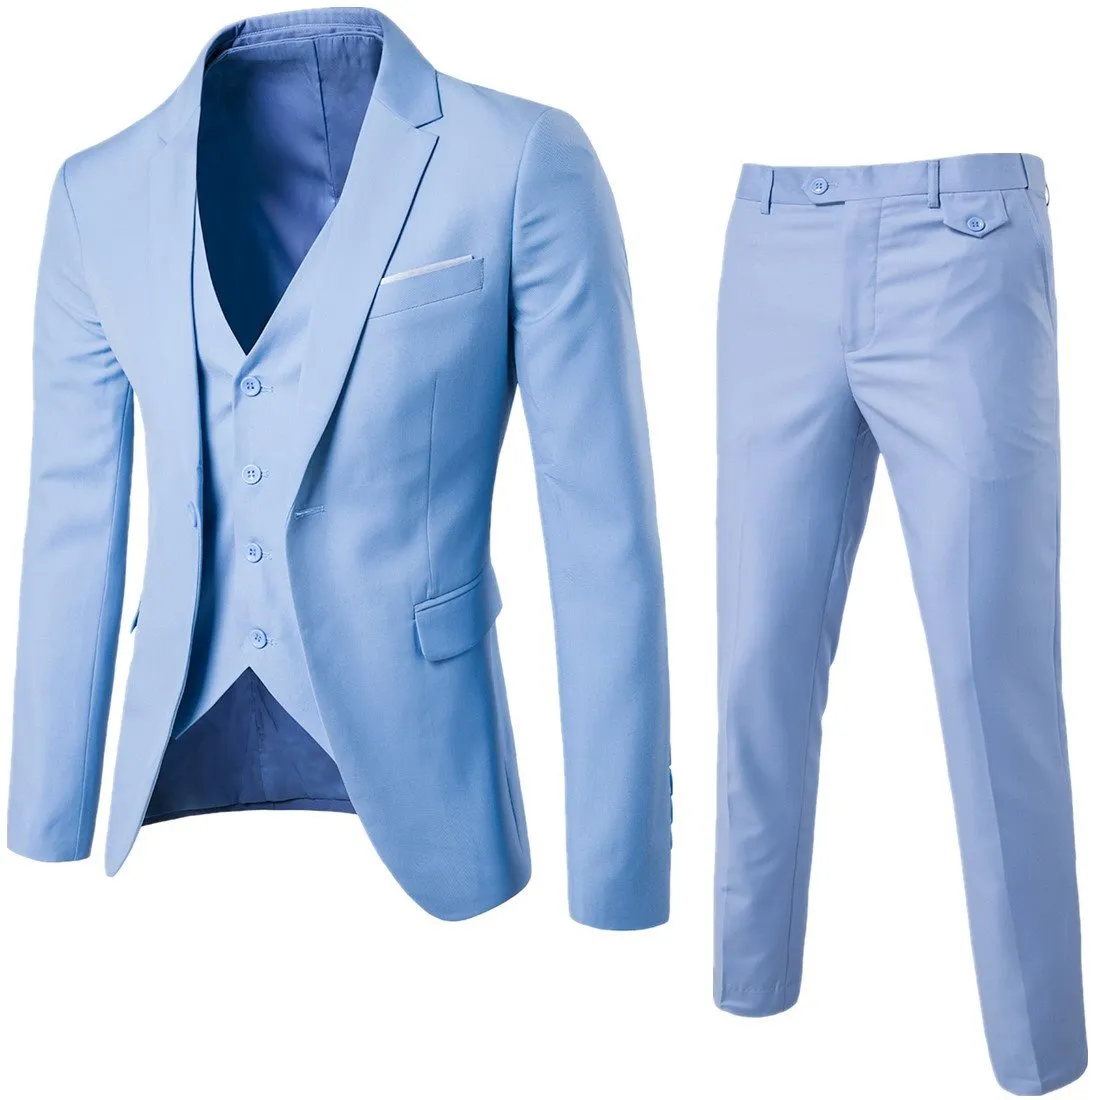 Blazer Pant Vest 3pcs مجموعة بدلات سوداء ضئيلة زفاف مجموعة كلاسيكية بليزرز الذكور فستان العمل الرسمي